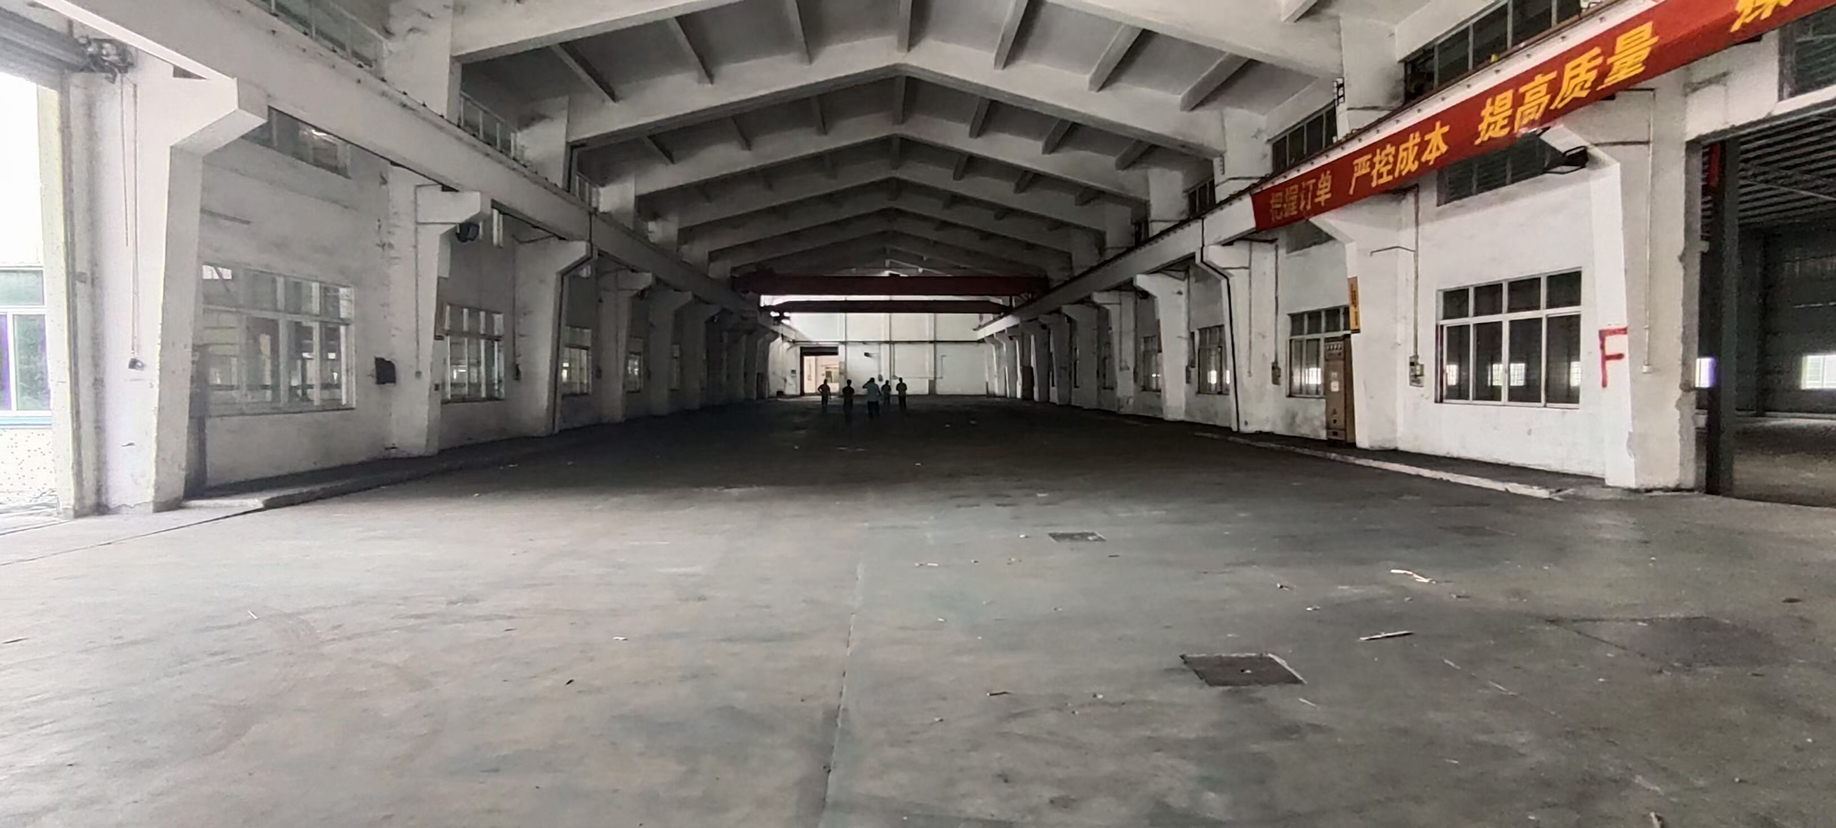 中山南头高台仓单一层厂房仓库出租面积约120000平方米